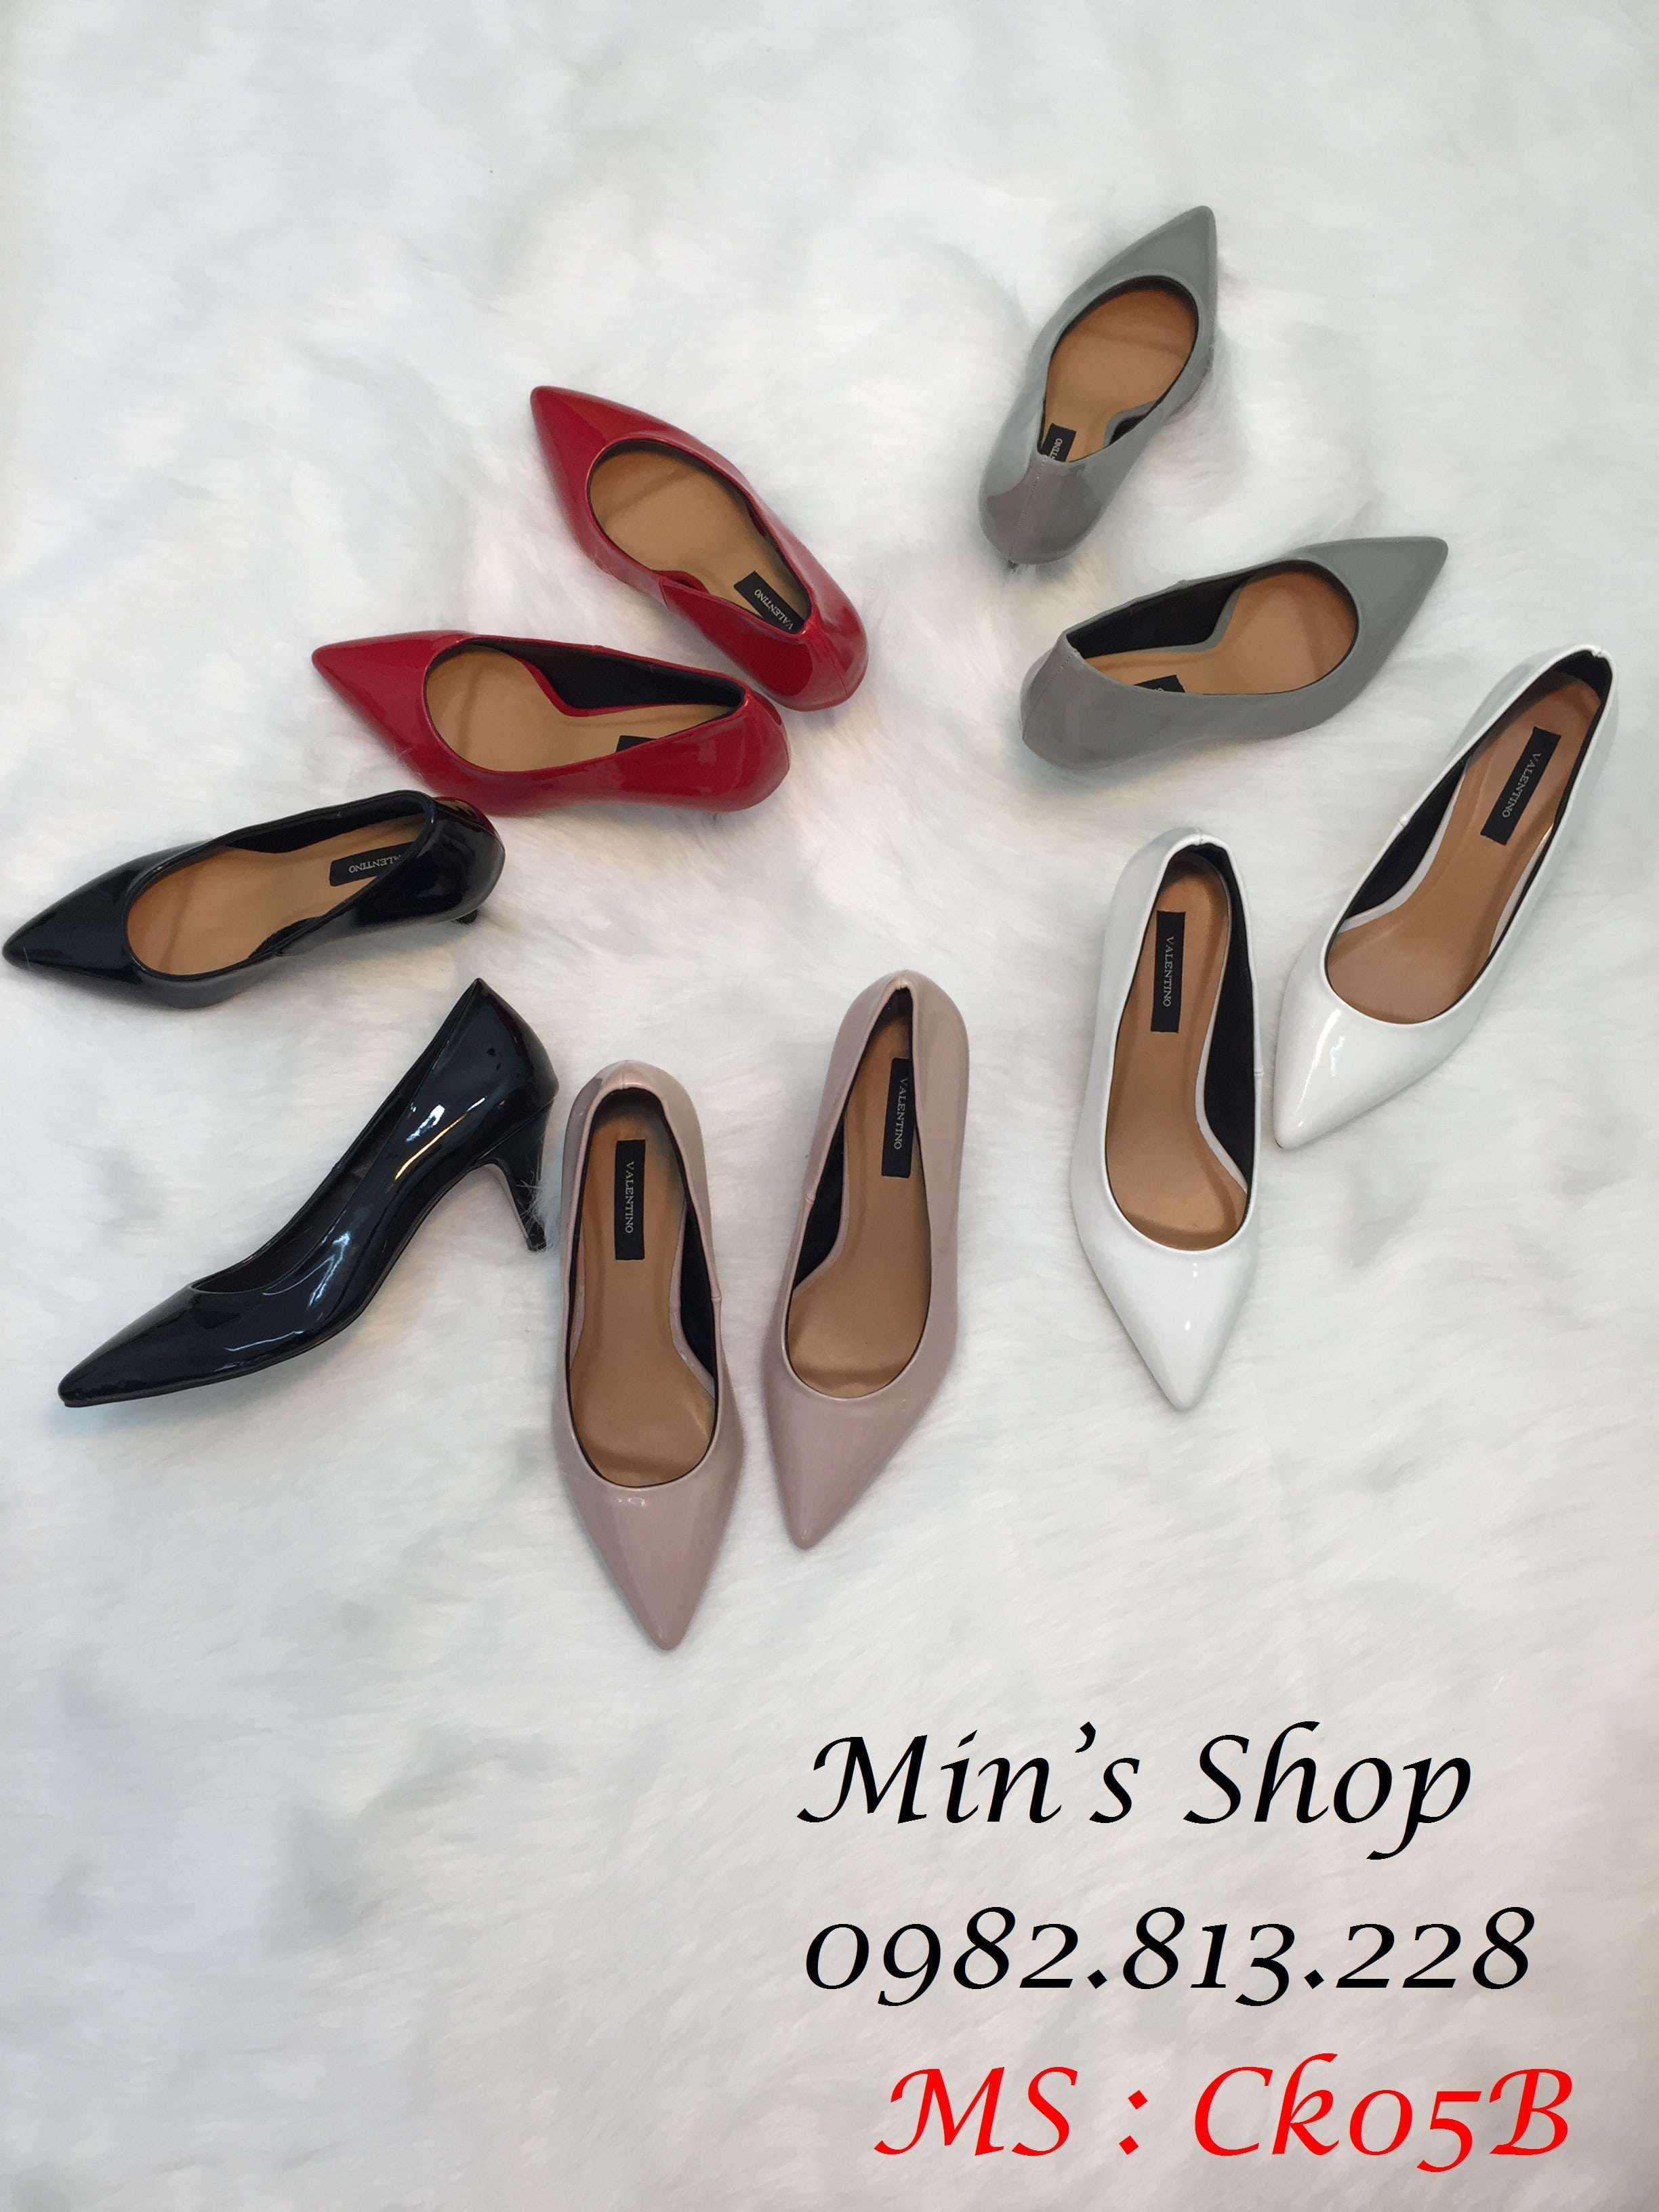 Minshop - Giày Cao Gót Đẹp 2017